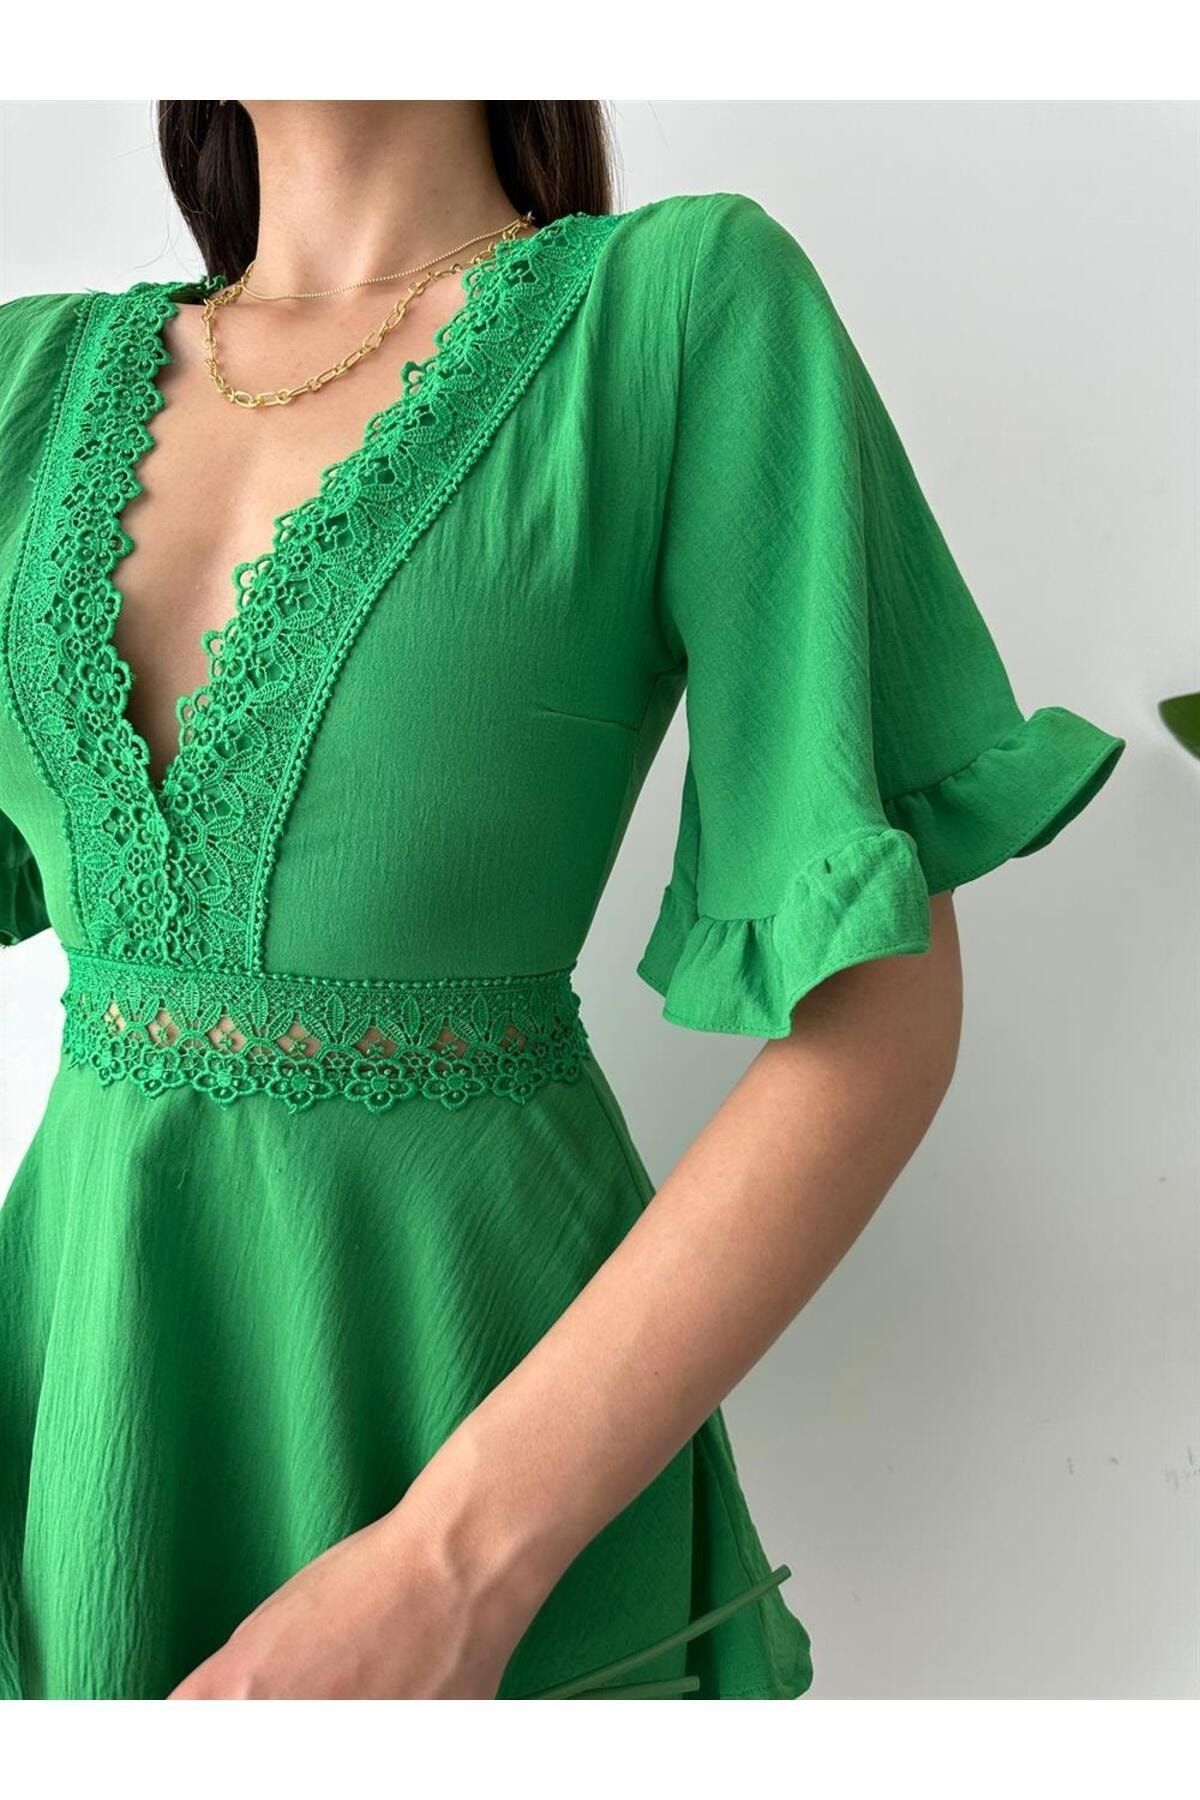 Valeria Vilson Kadın Sırt Dekoliteli Brode Detaylı Şortlu Tulum Elbise-Yeşil(1856)